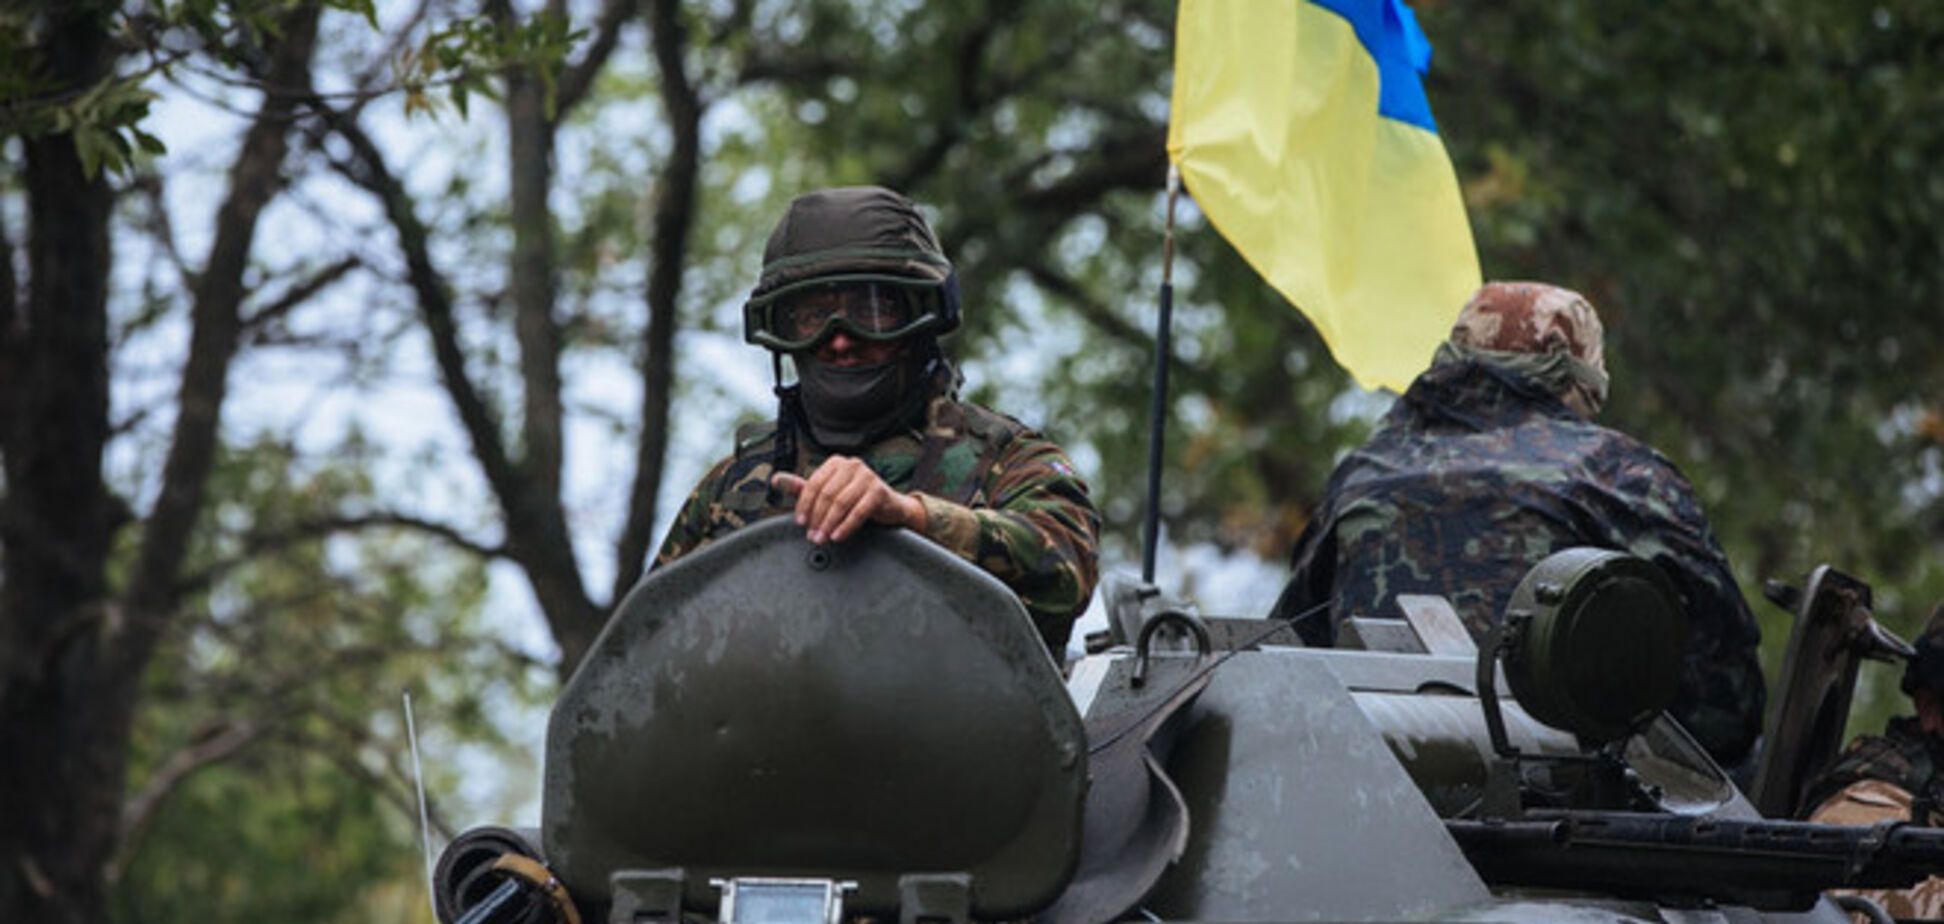 СМИ рассказали, кем были командиры добровольческих батальонов до войны на Донбассе